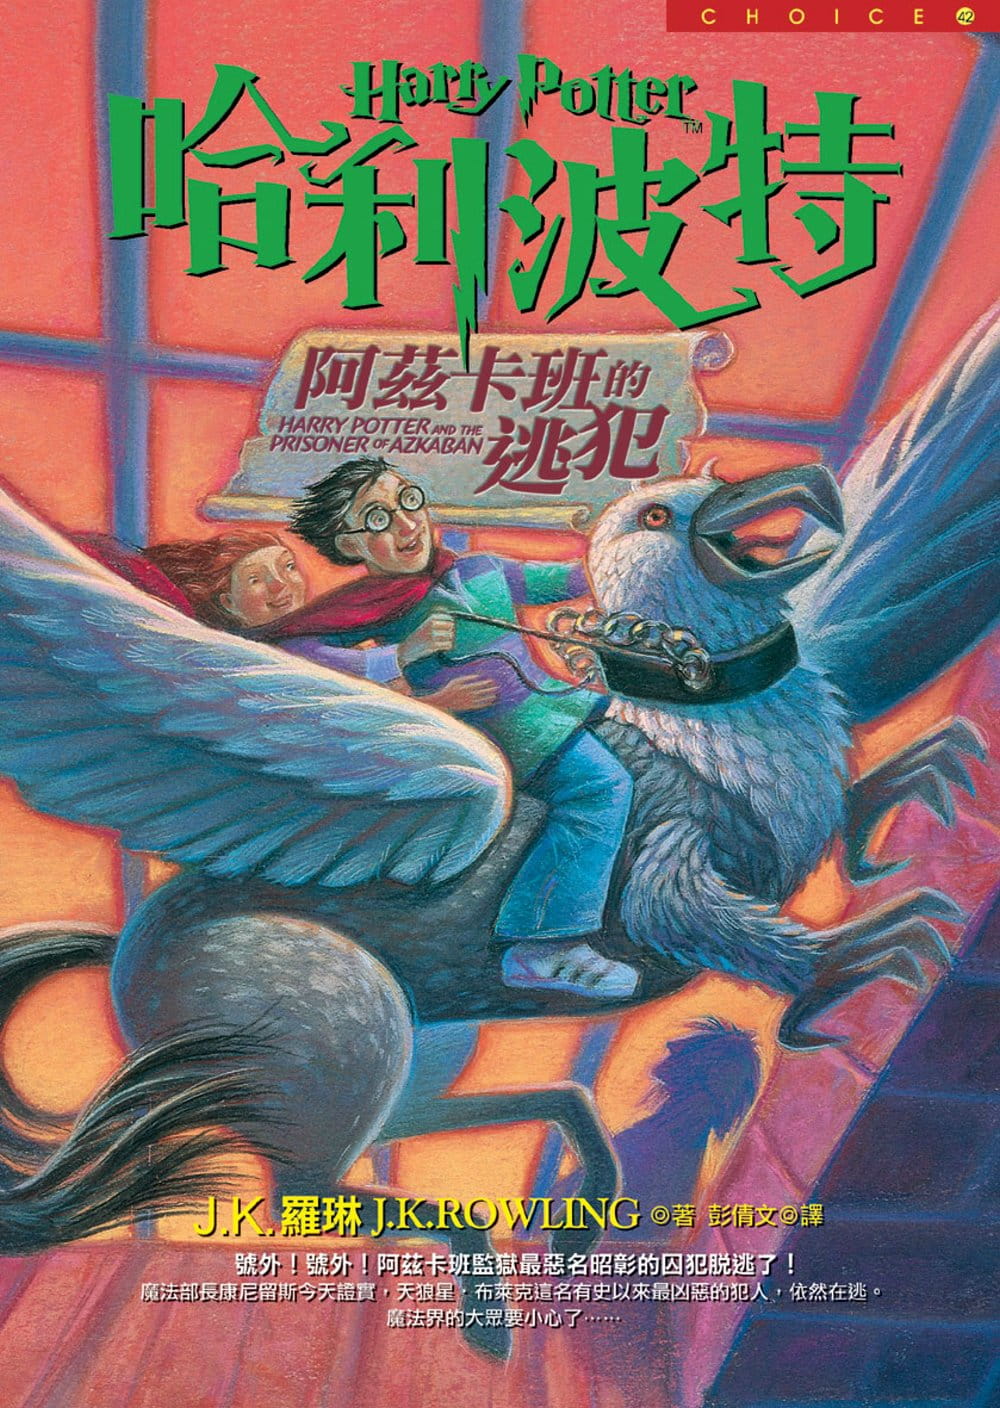 رمان هری پاتر و زندانی آزکابان به چینی Harry Potter and the Prisoner of Azkaban Chinese Edition از فروشگاه کتاب سارانگ